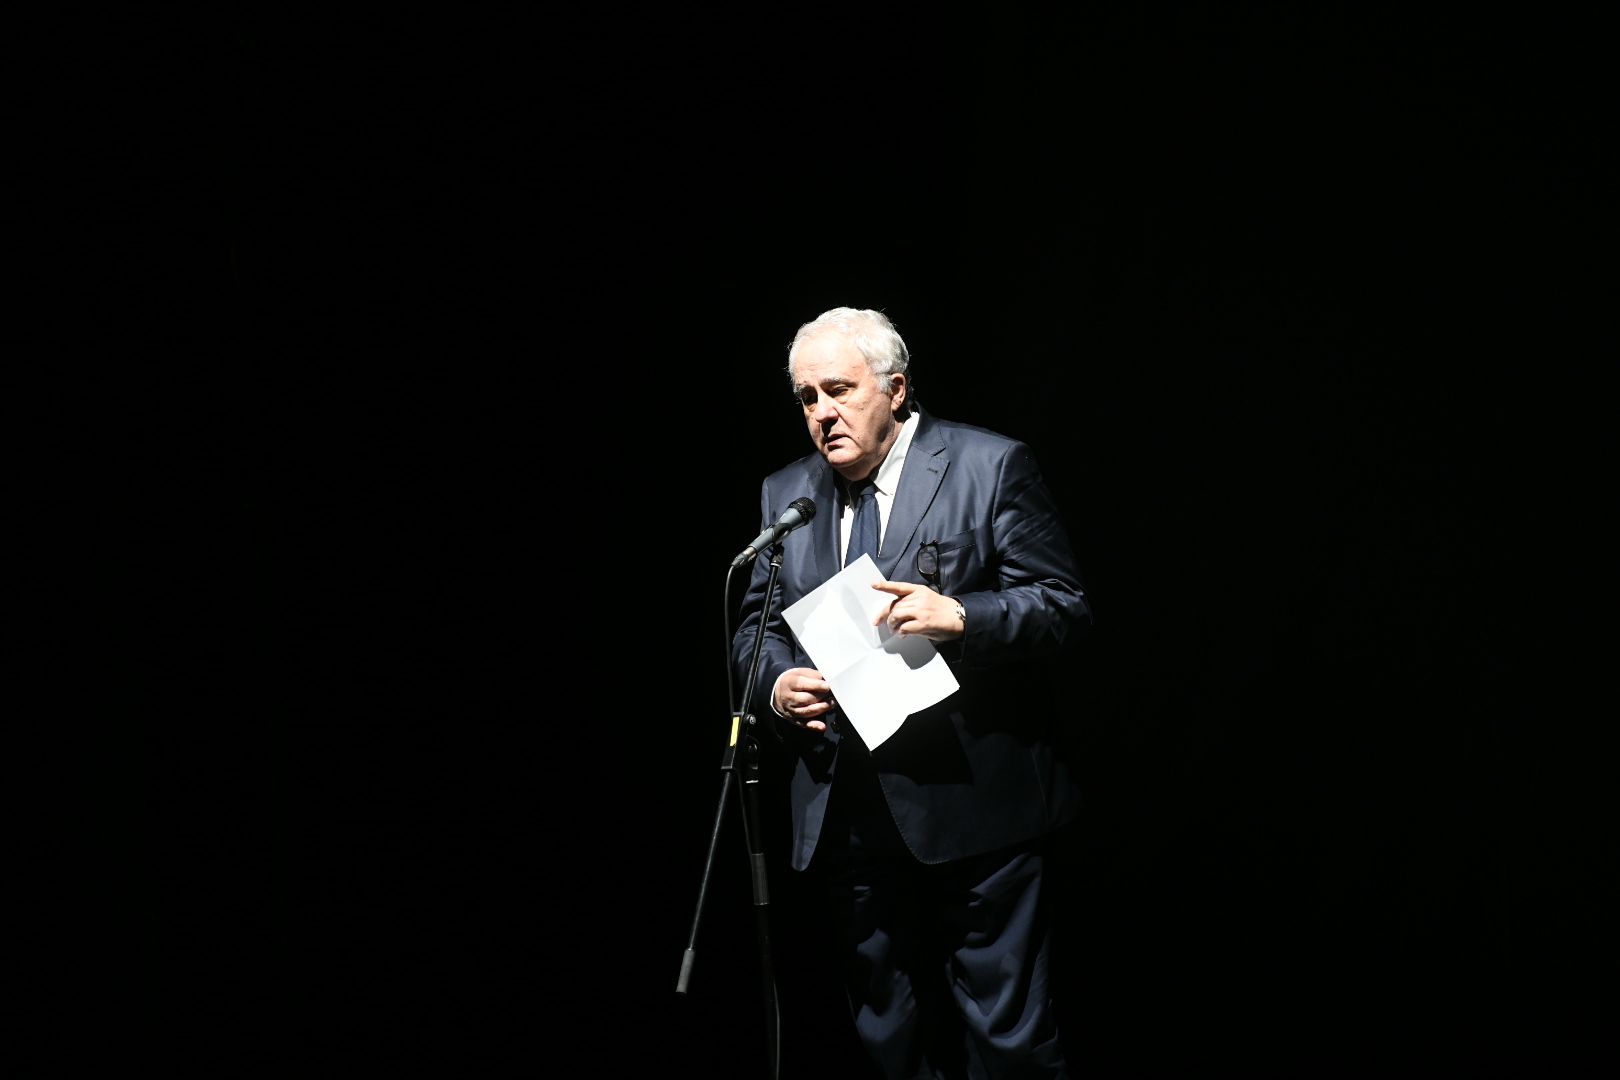 Komemoracija reditelju Dejanu Mijaču u JDP-u, Jugoslovenskom dramskom pozorištu